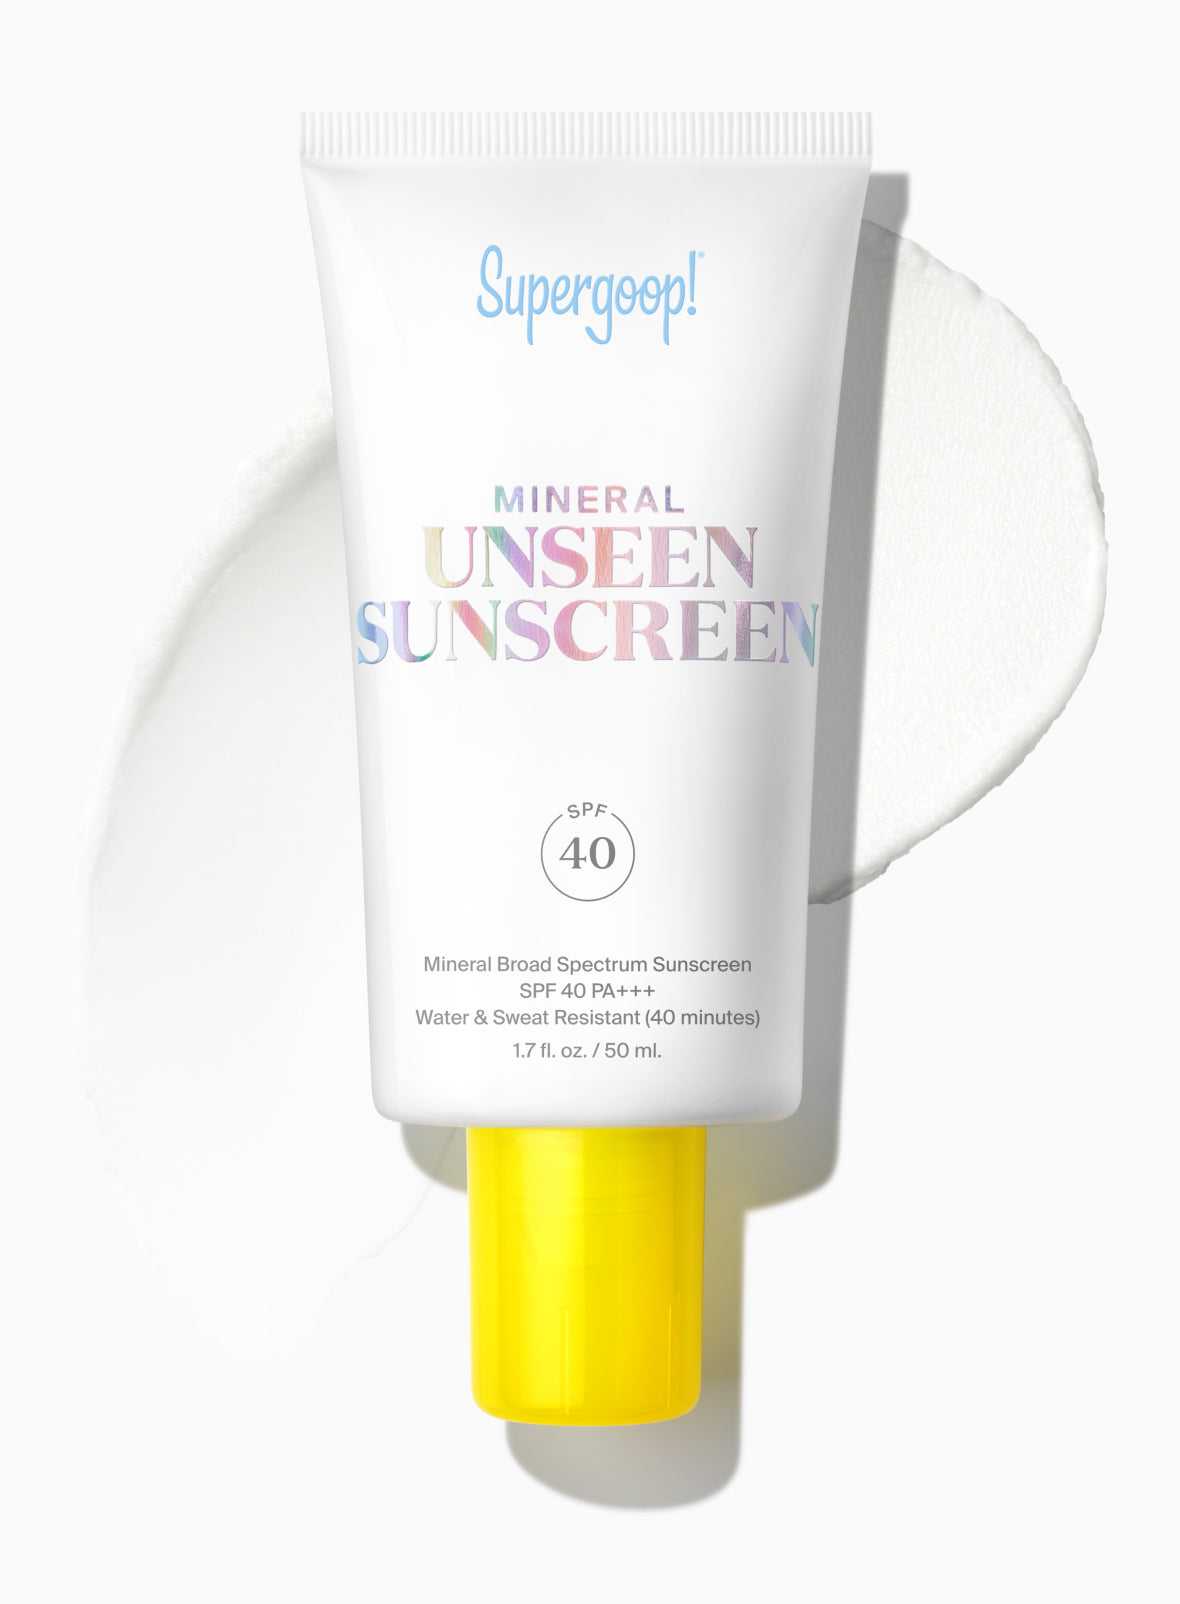 Mineral Unseen Sunscreen SPF 40 1.7 fl. oz. Supergoop!